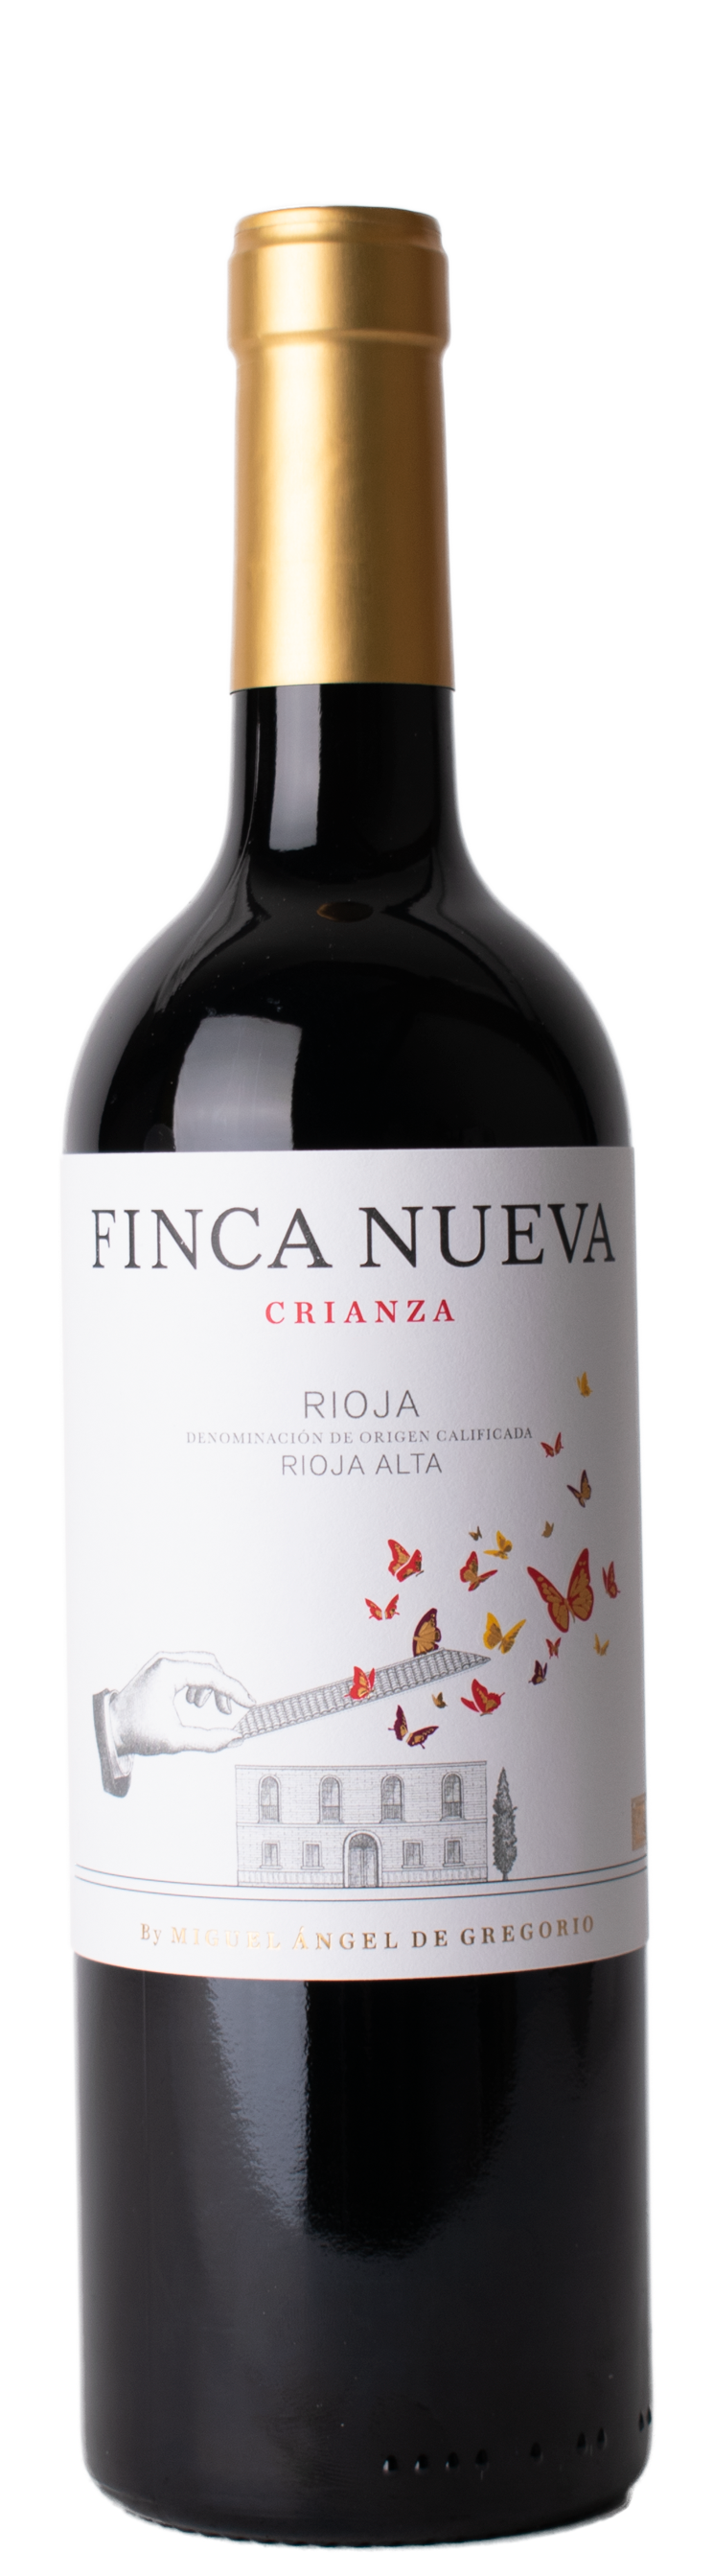 Rioja 2019 Finca Nueva Crianza